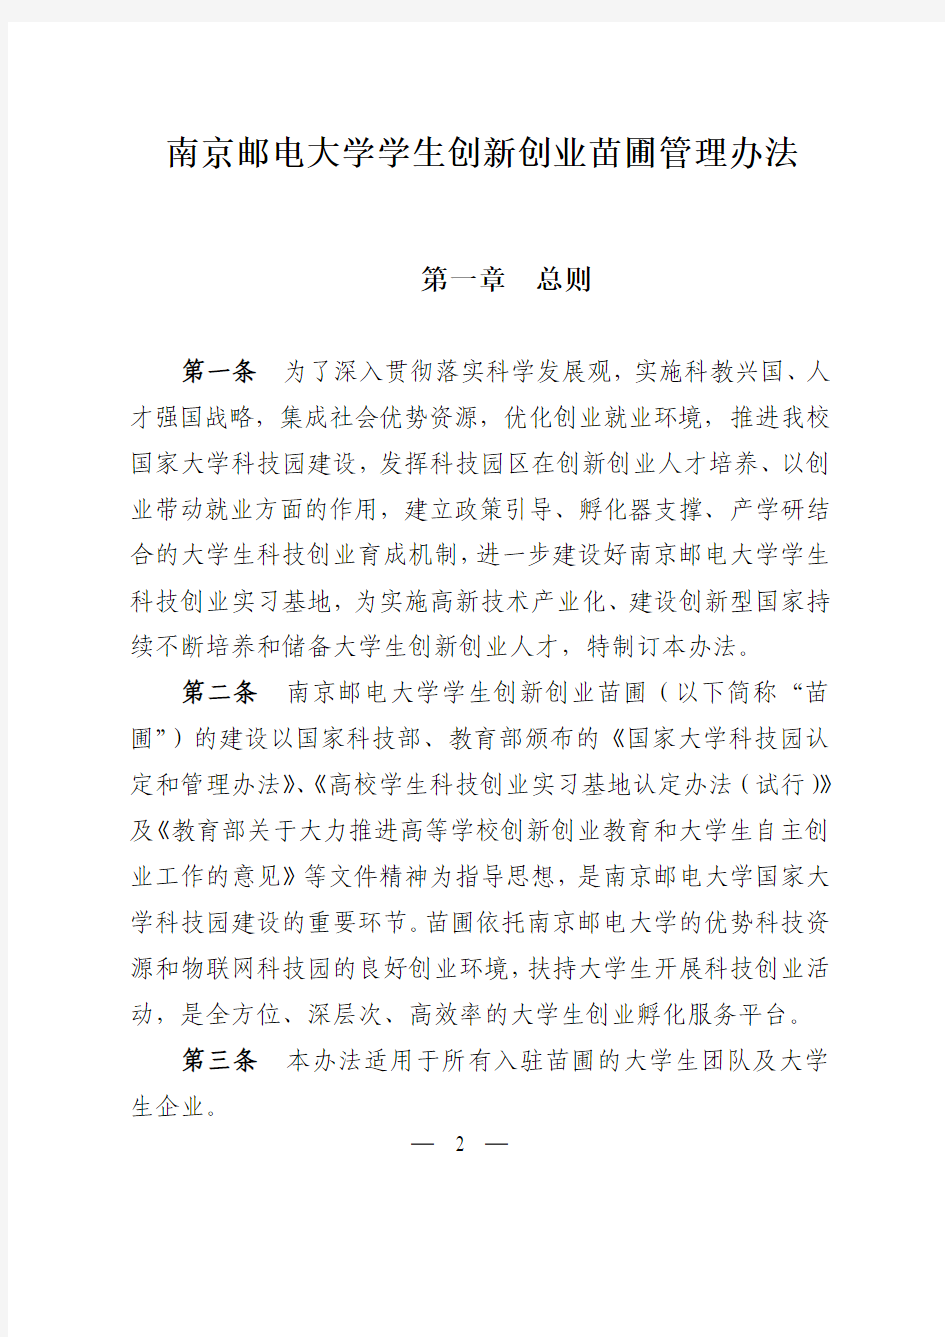 南京邮电大学学生创新创业苗圃管理办法(正文)